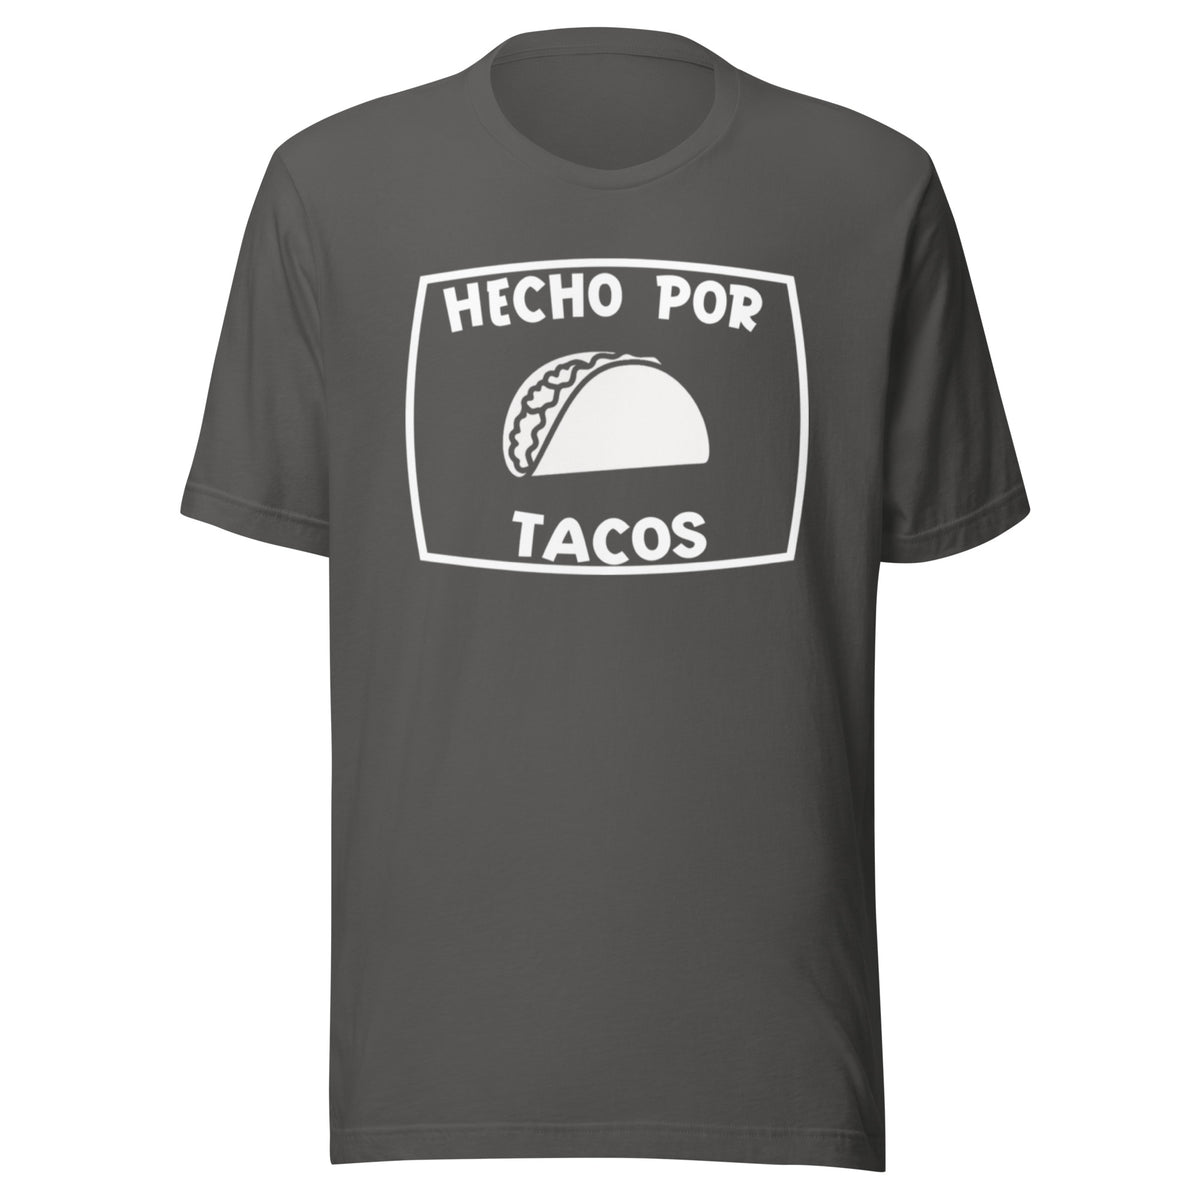 Hecho Por Tacos T-shirt (Made by tacos)